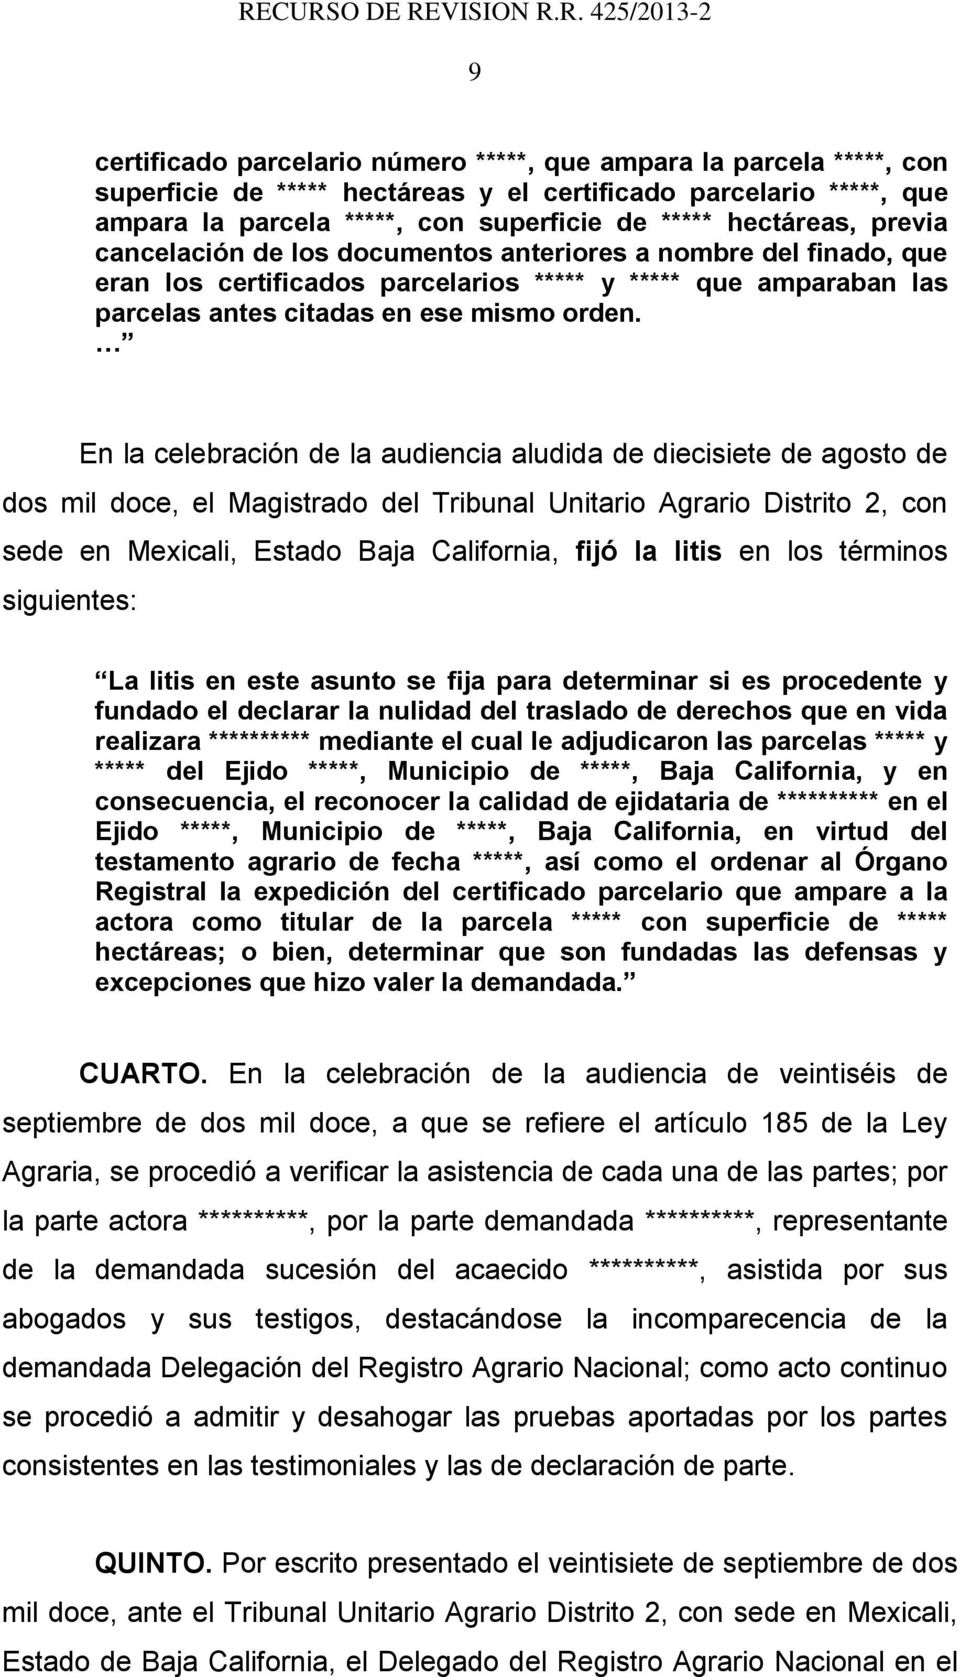 En la celebración de la audiencia aludida de diecisiete de agosto de dos mil doce, el Magistrado del Tribunal Unitario Agrario Distrito 2, con sede en Mexicali, Estado Baja California, fijó la litis